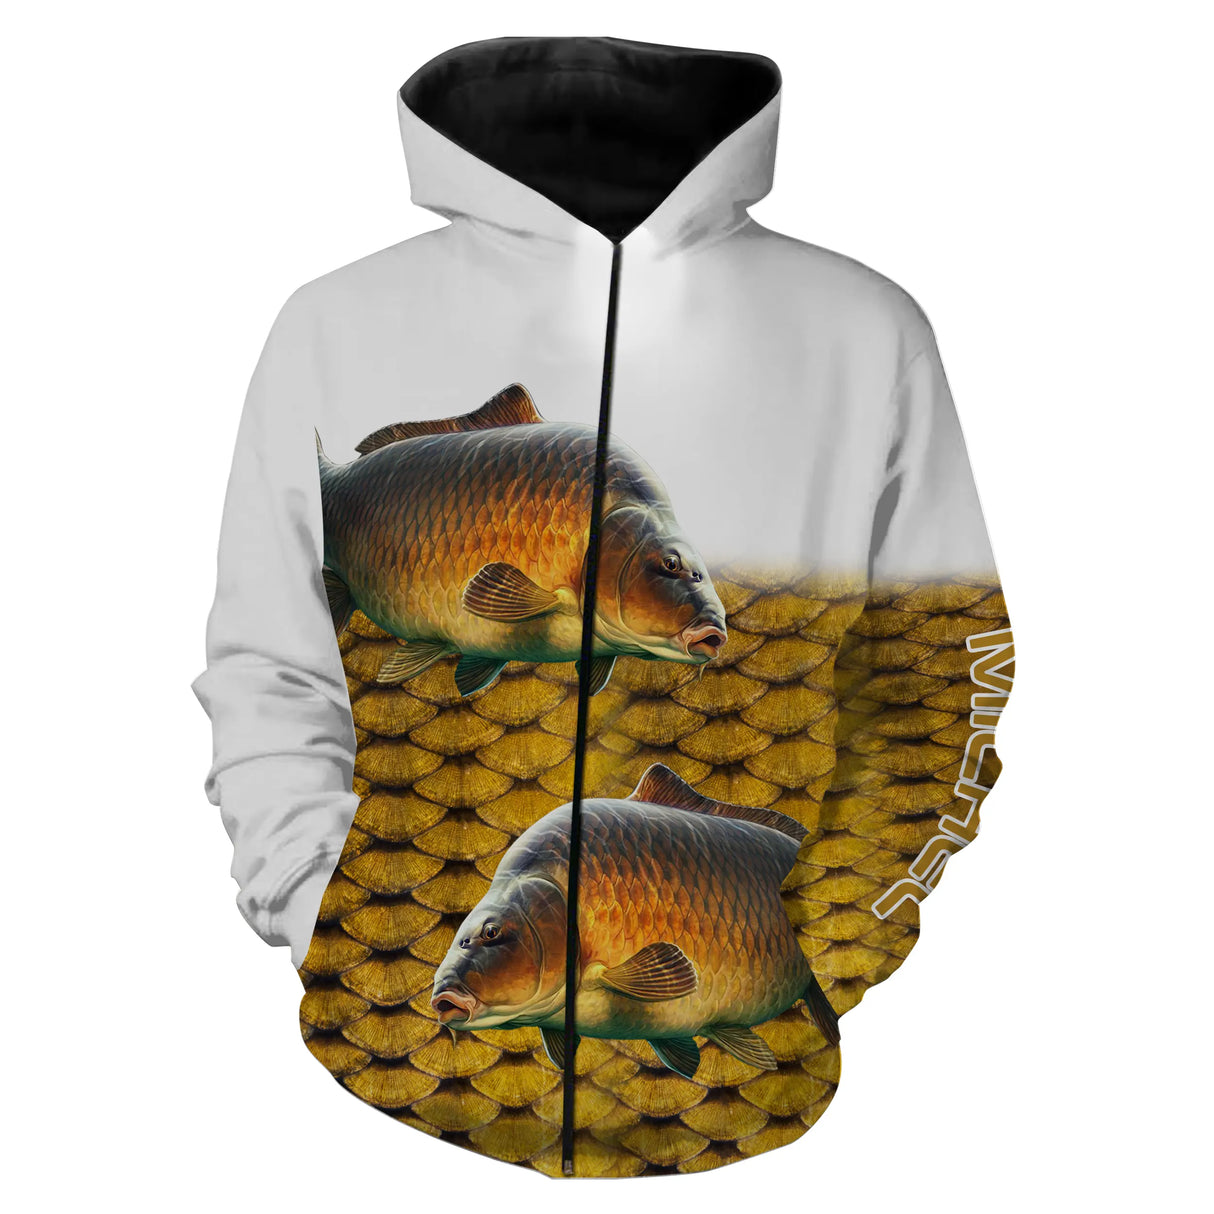 Personalisiertes Anti-UV-T-Shirt zum Karpfenangeln, Geschenkidee für Fischer – CT06082218